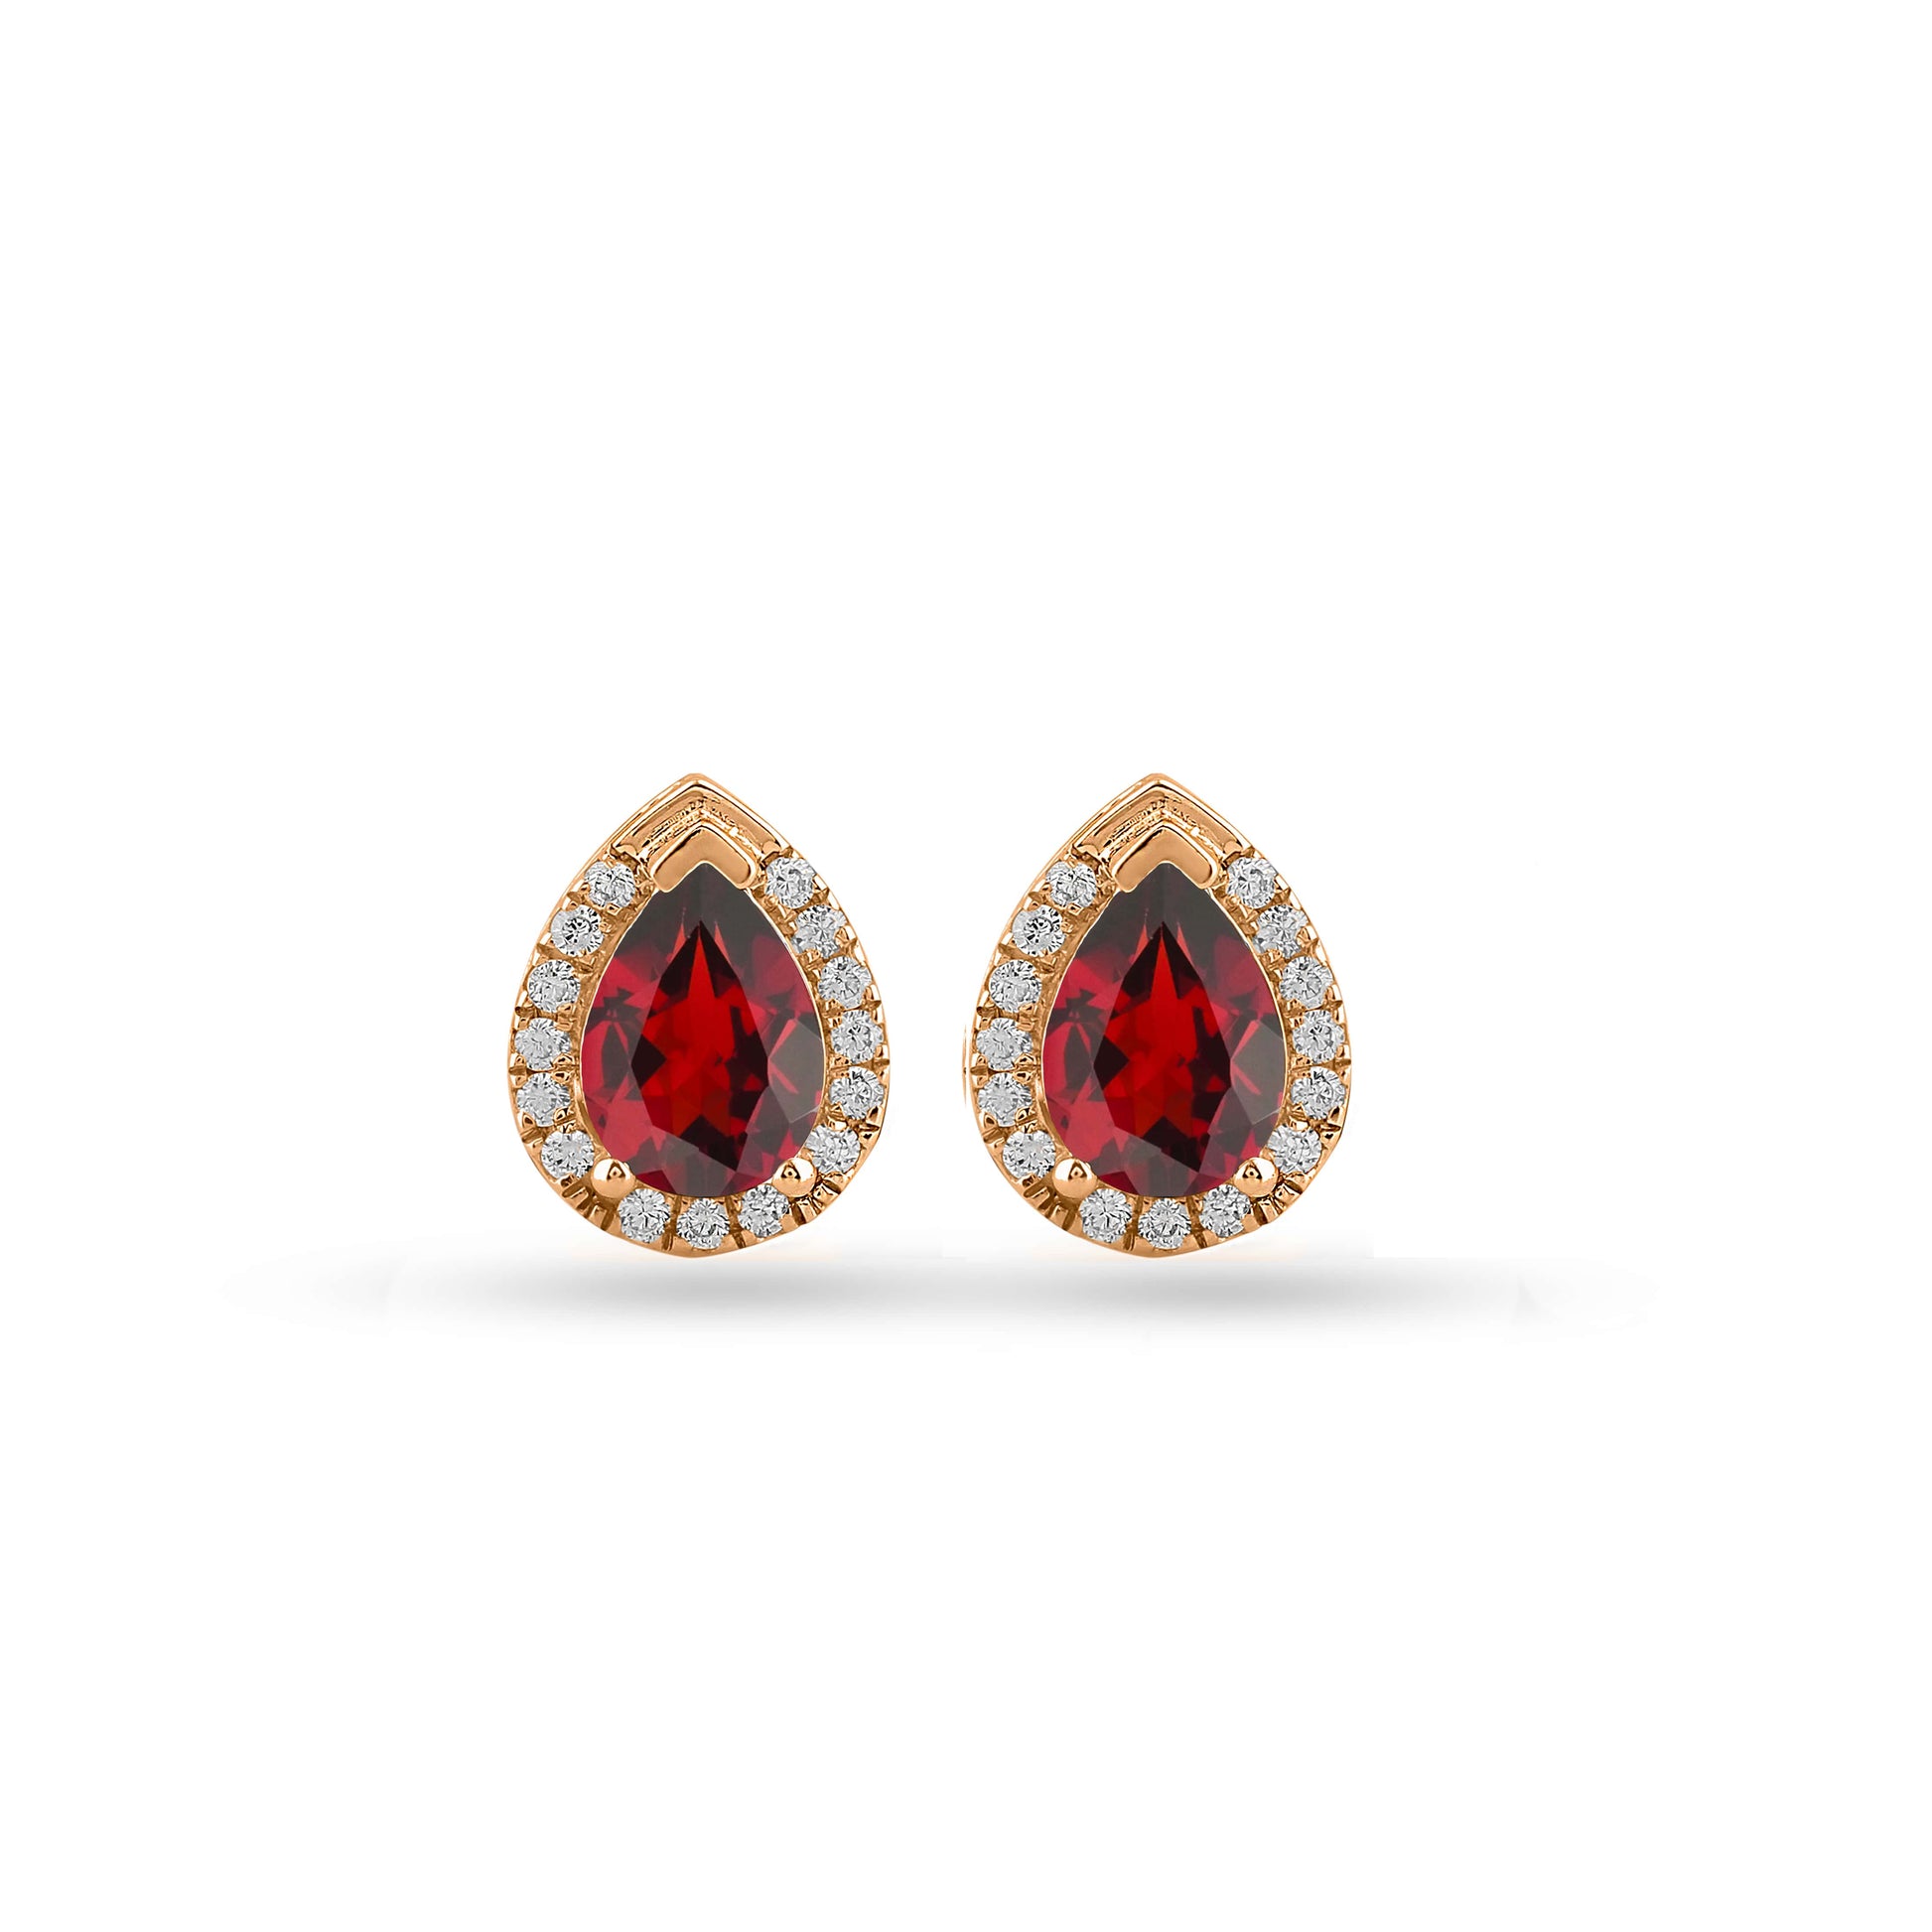 Garnet gemstone halo earrings